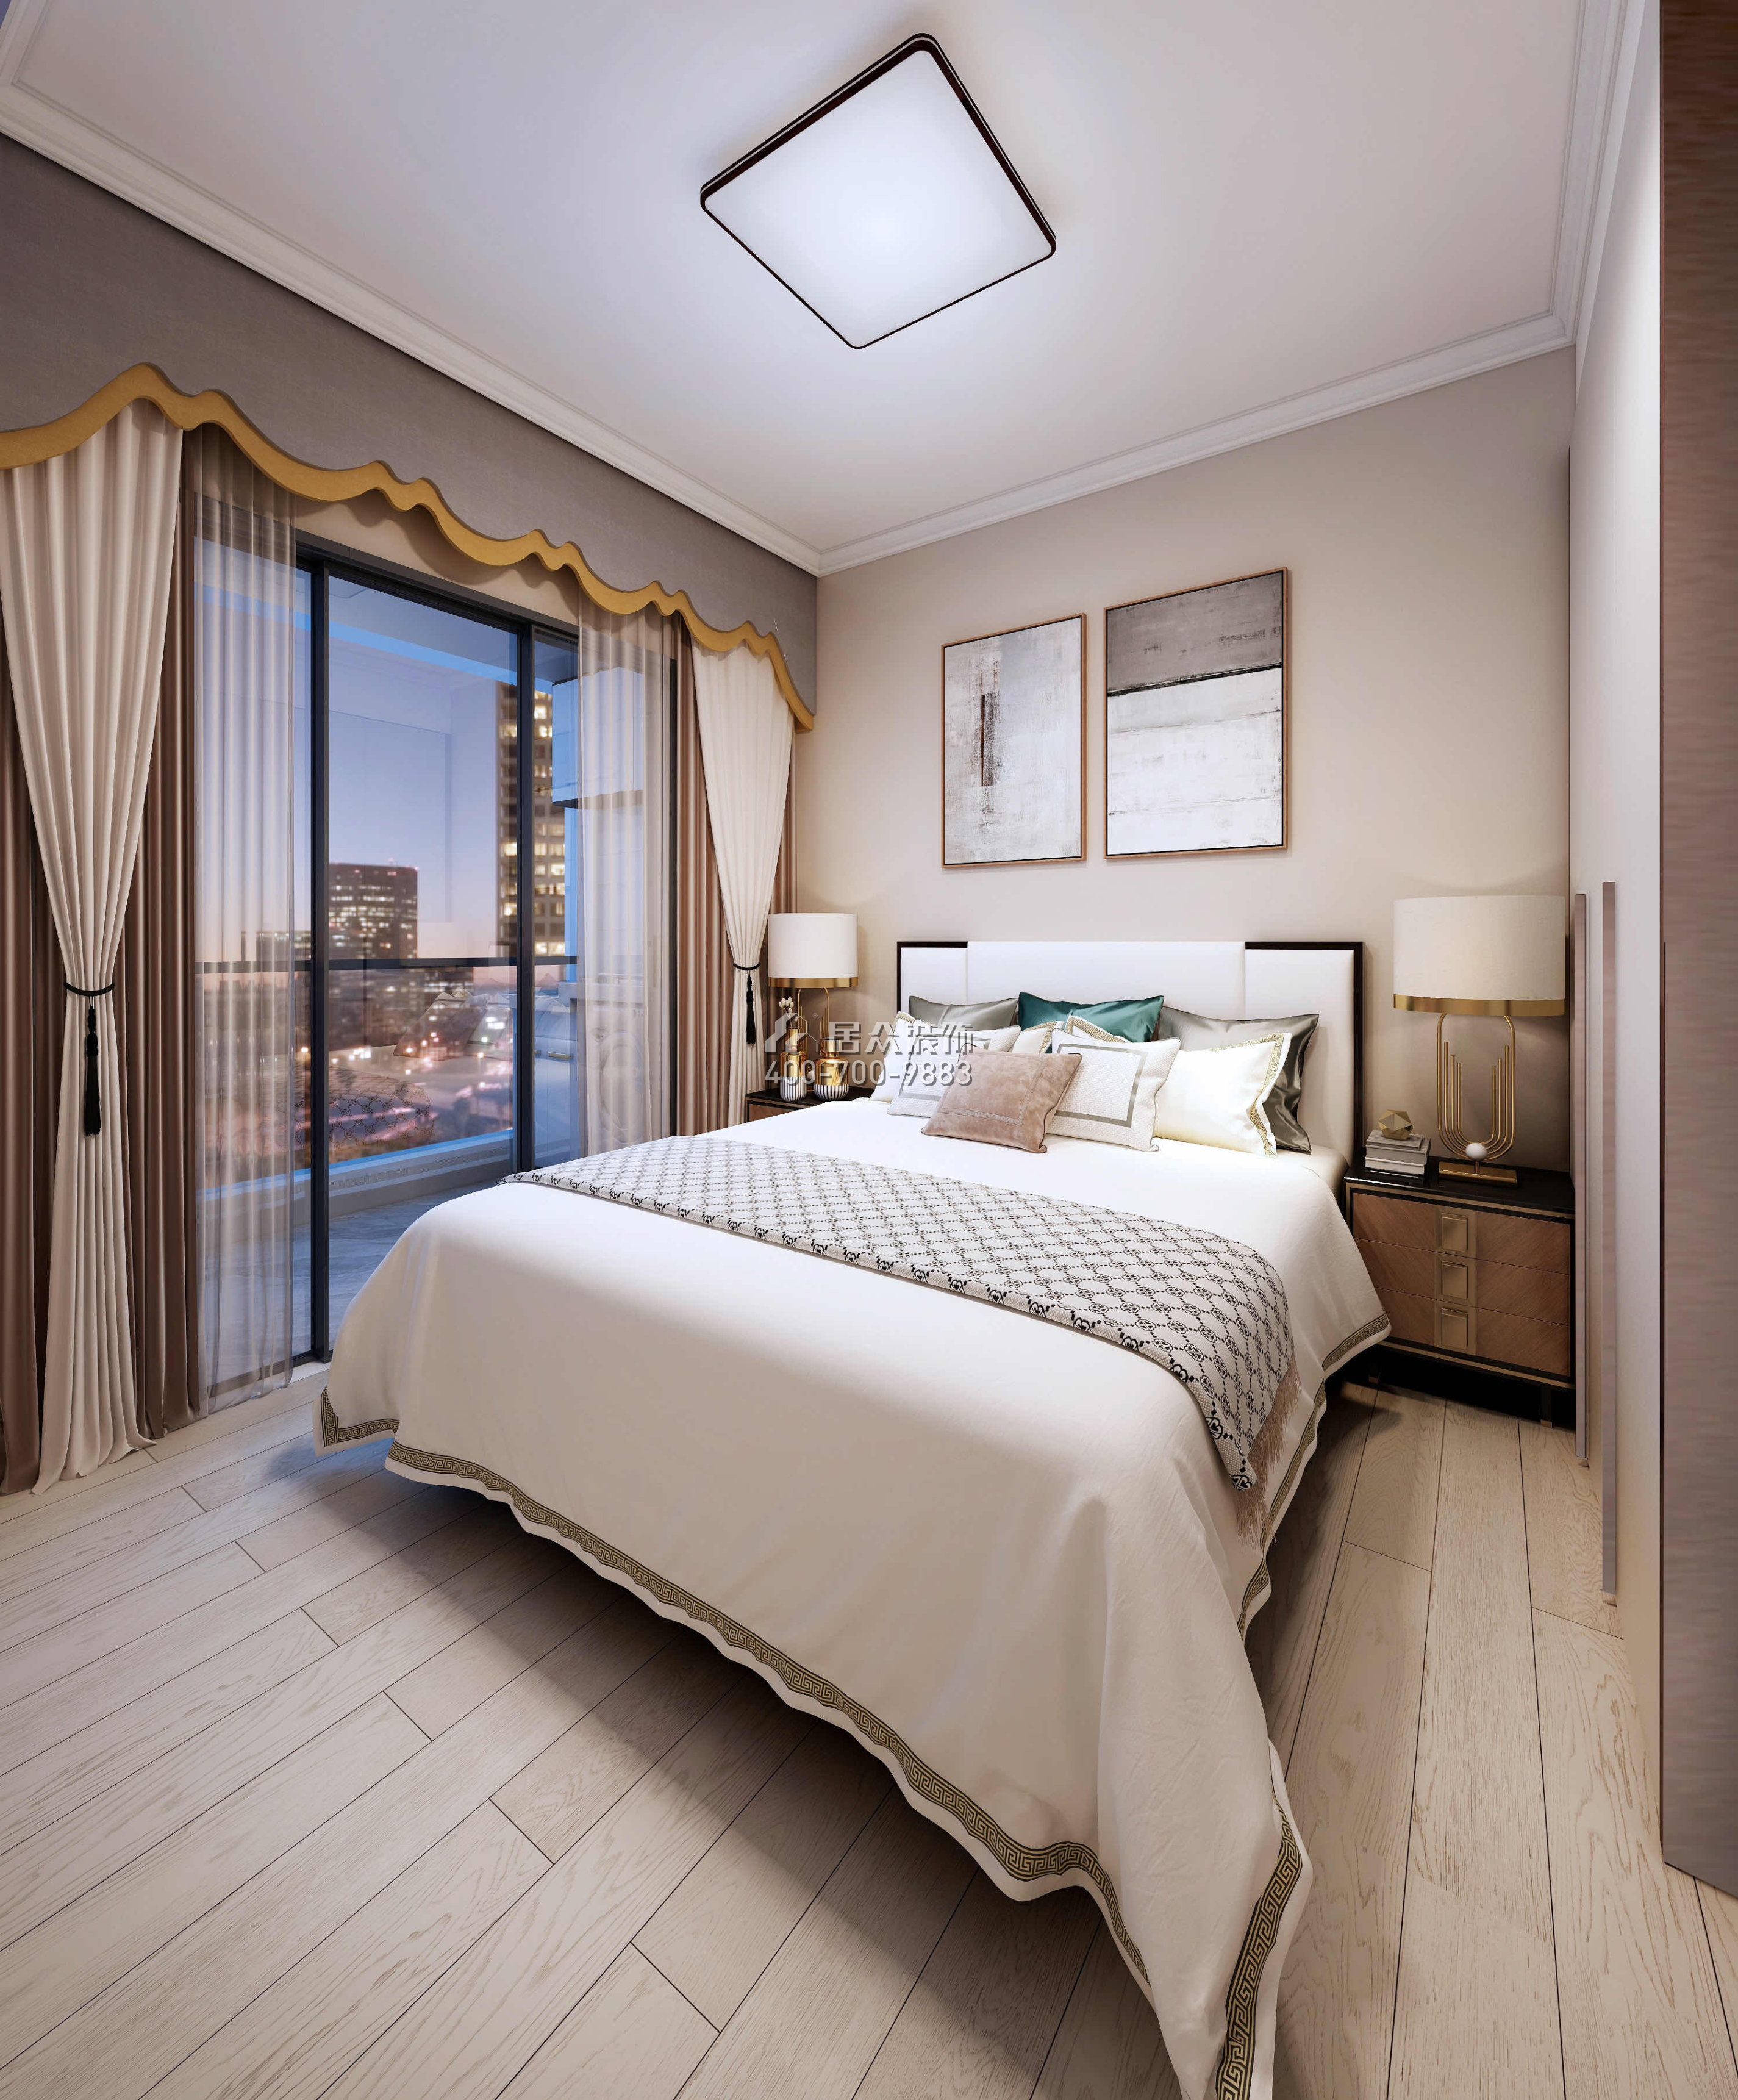 勤诚达正大城103平方米现代简约风格平层户型卧室装修效果图